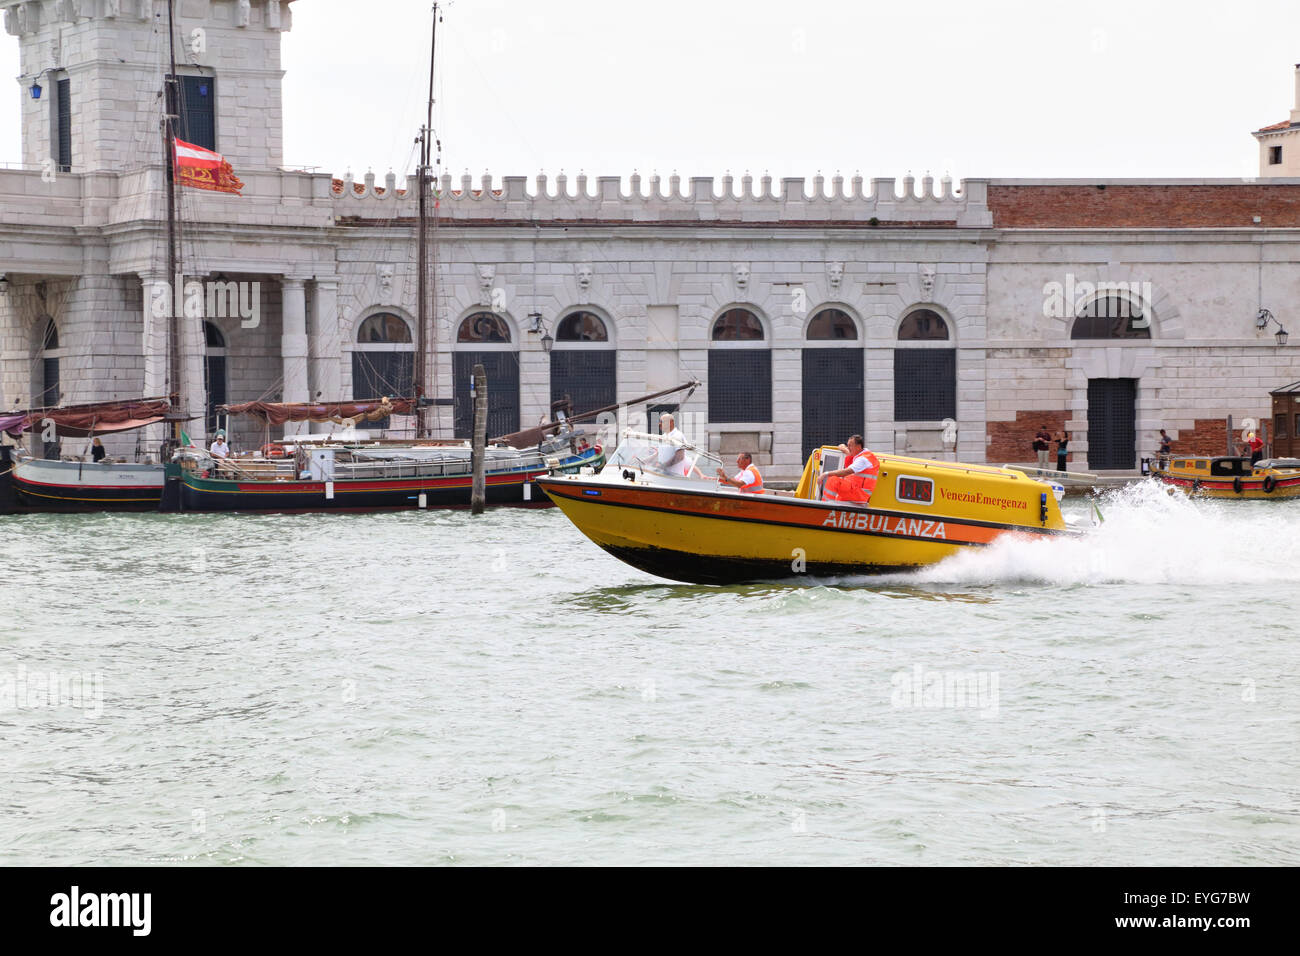 Ambulanza - Venezia Emergenza - barco de ambulancia en Grand Canal Foto de stock